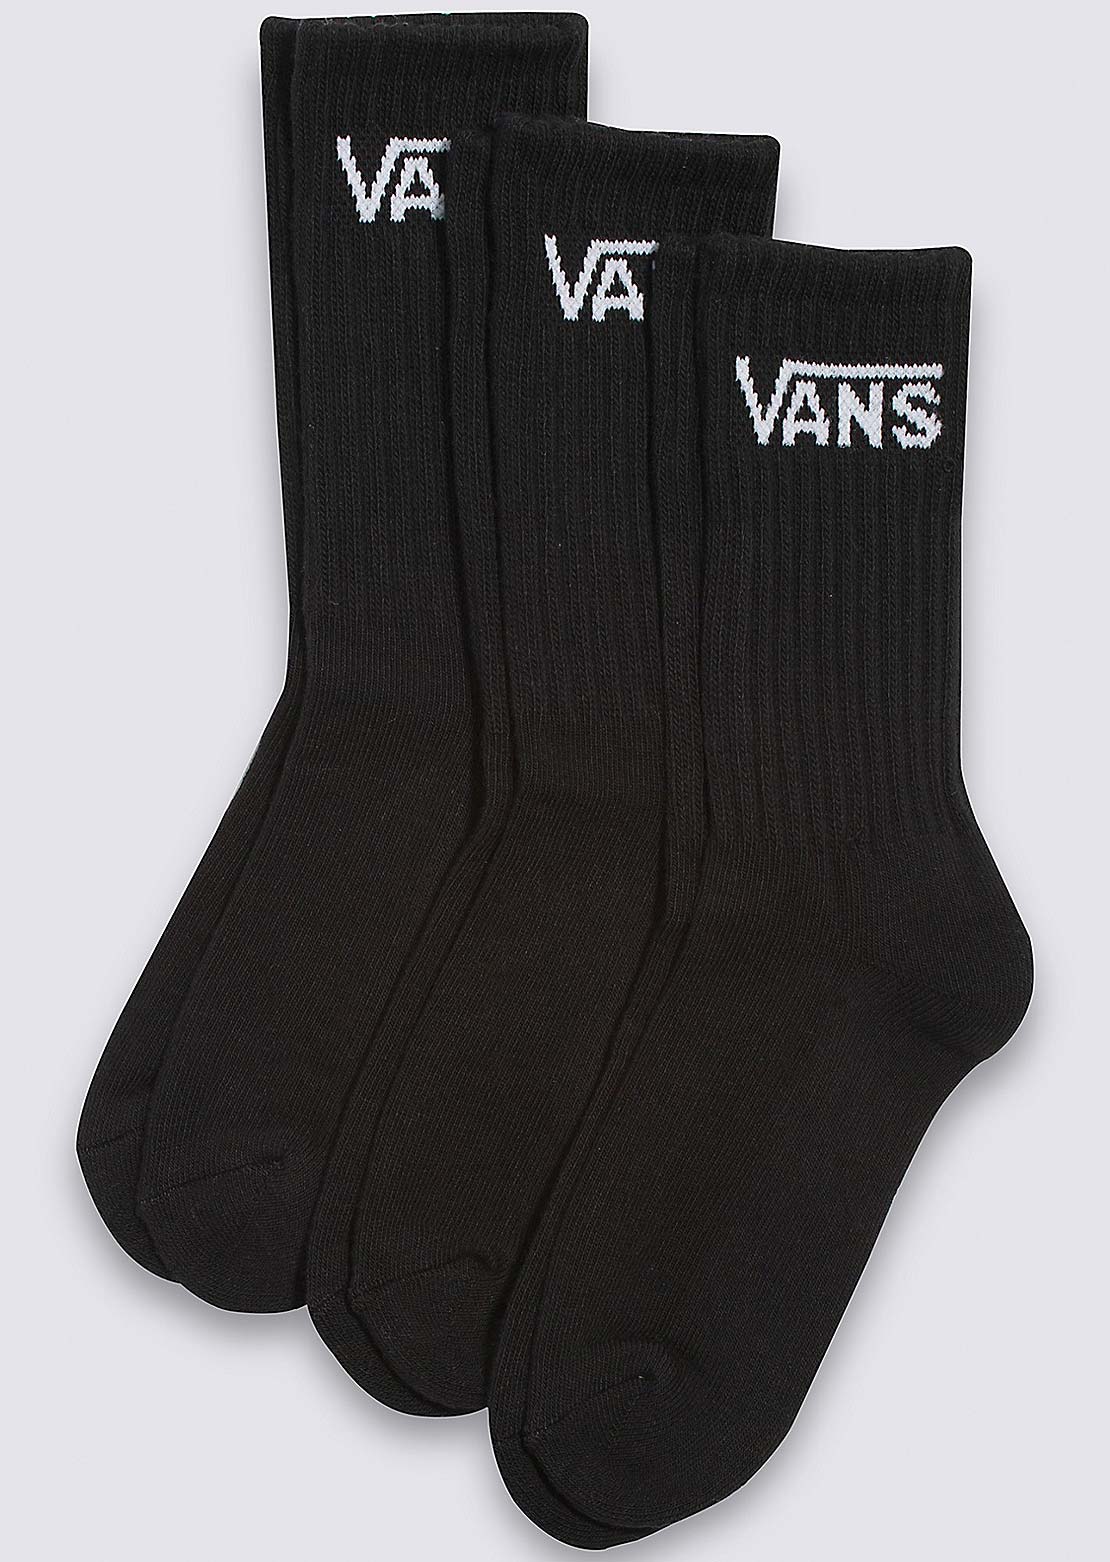 Vans Junior Classic Crew Socks Black